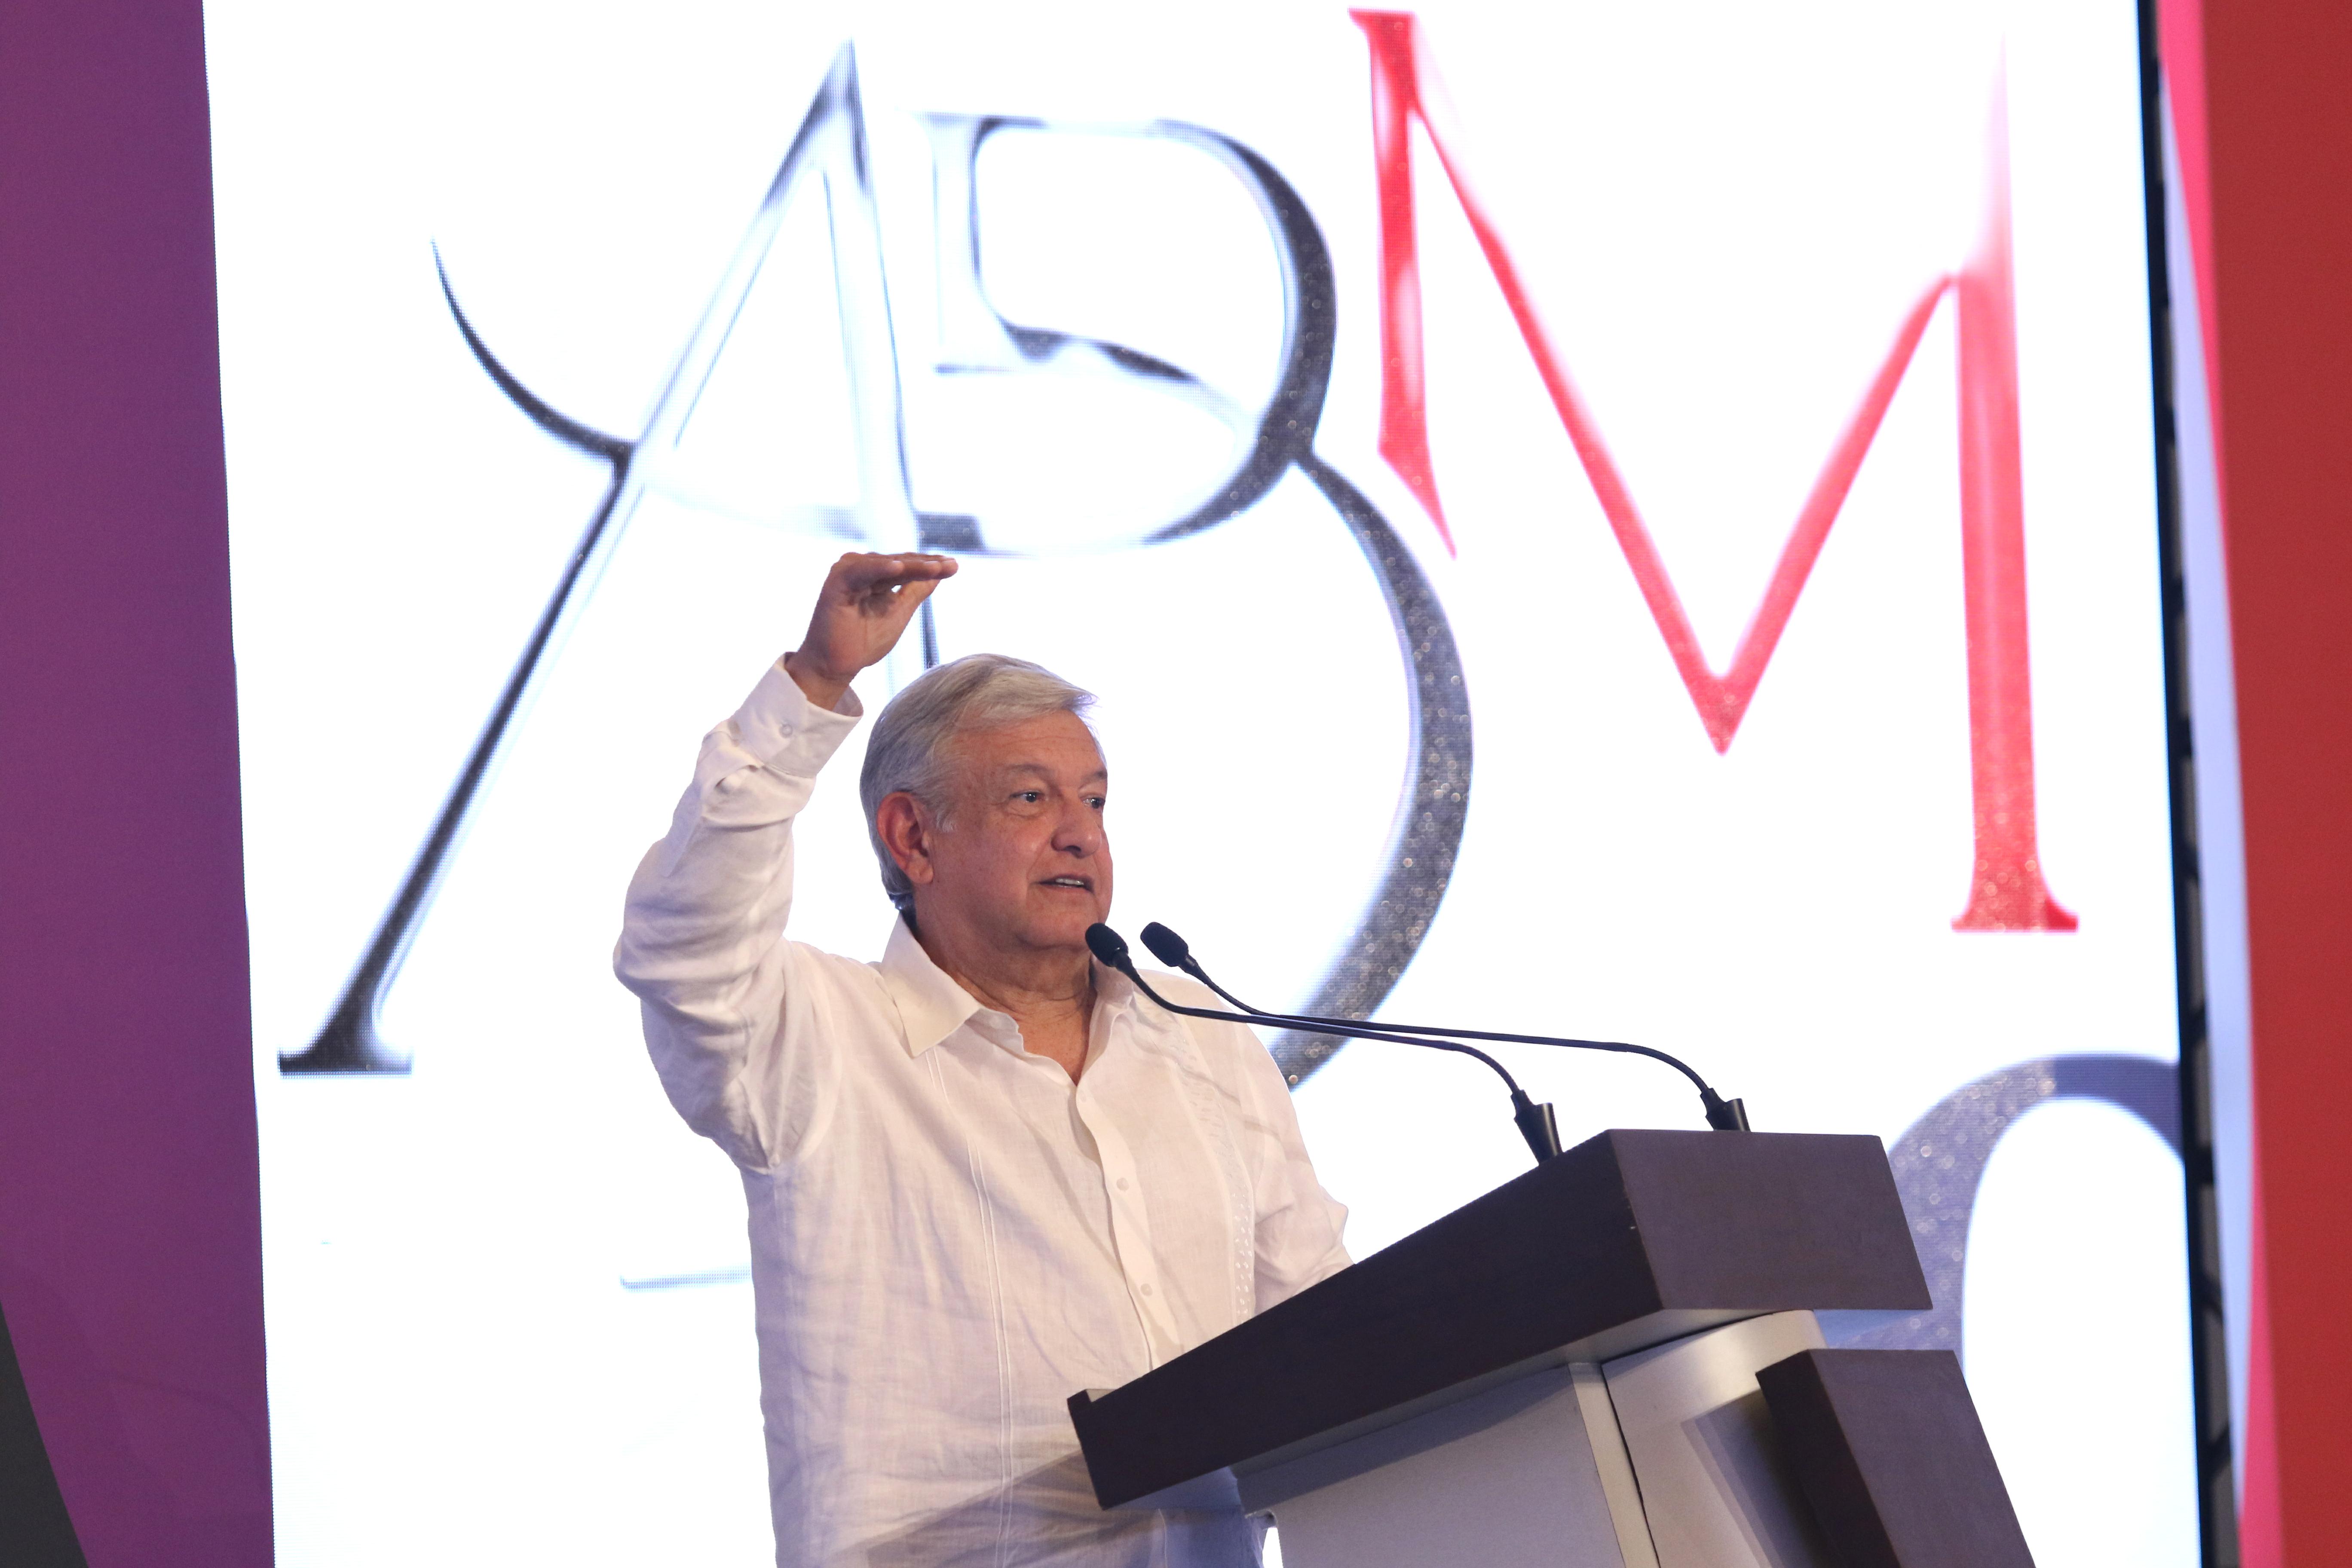 Foto: Andres Manuel López Obrador durante su participación en la pasada Convencion Bancaria realizada en el puerto de Acapulco, 22 marzo 2019